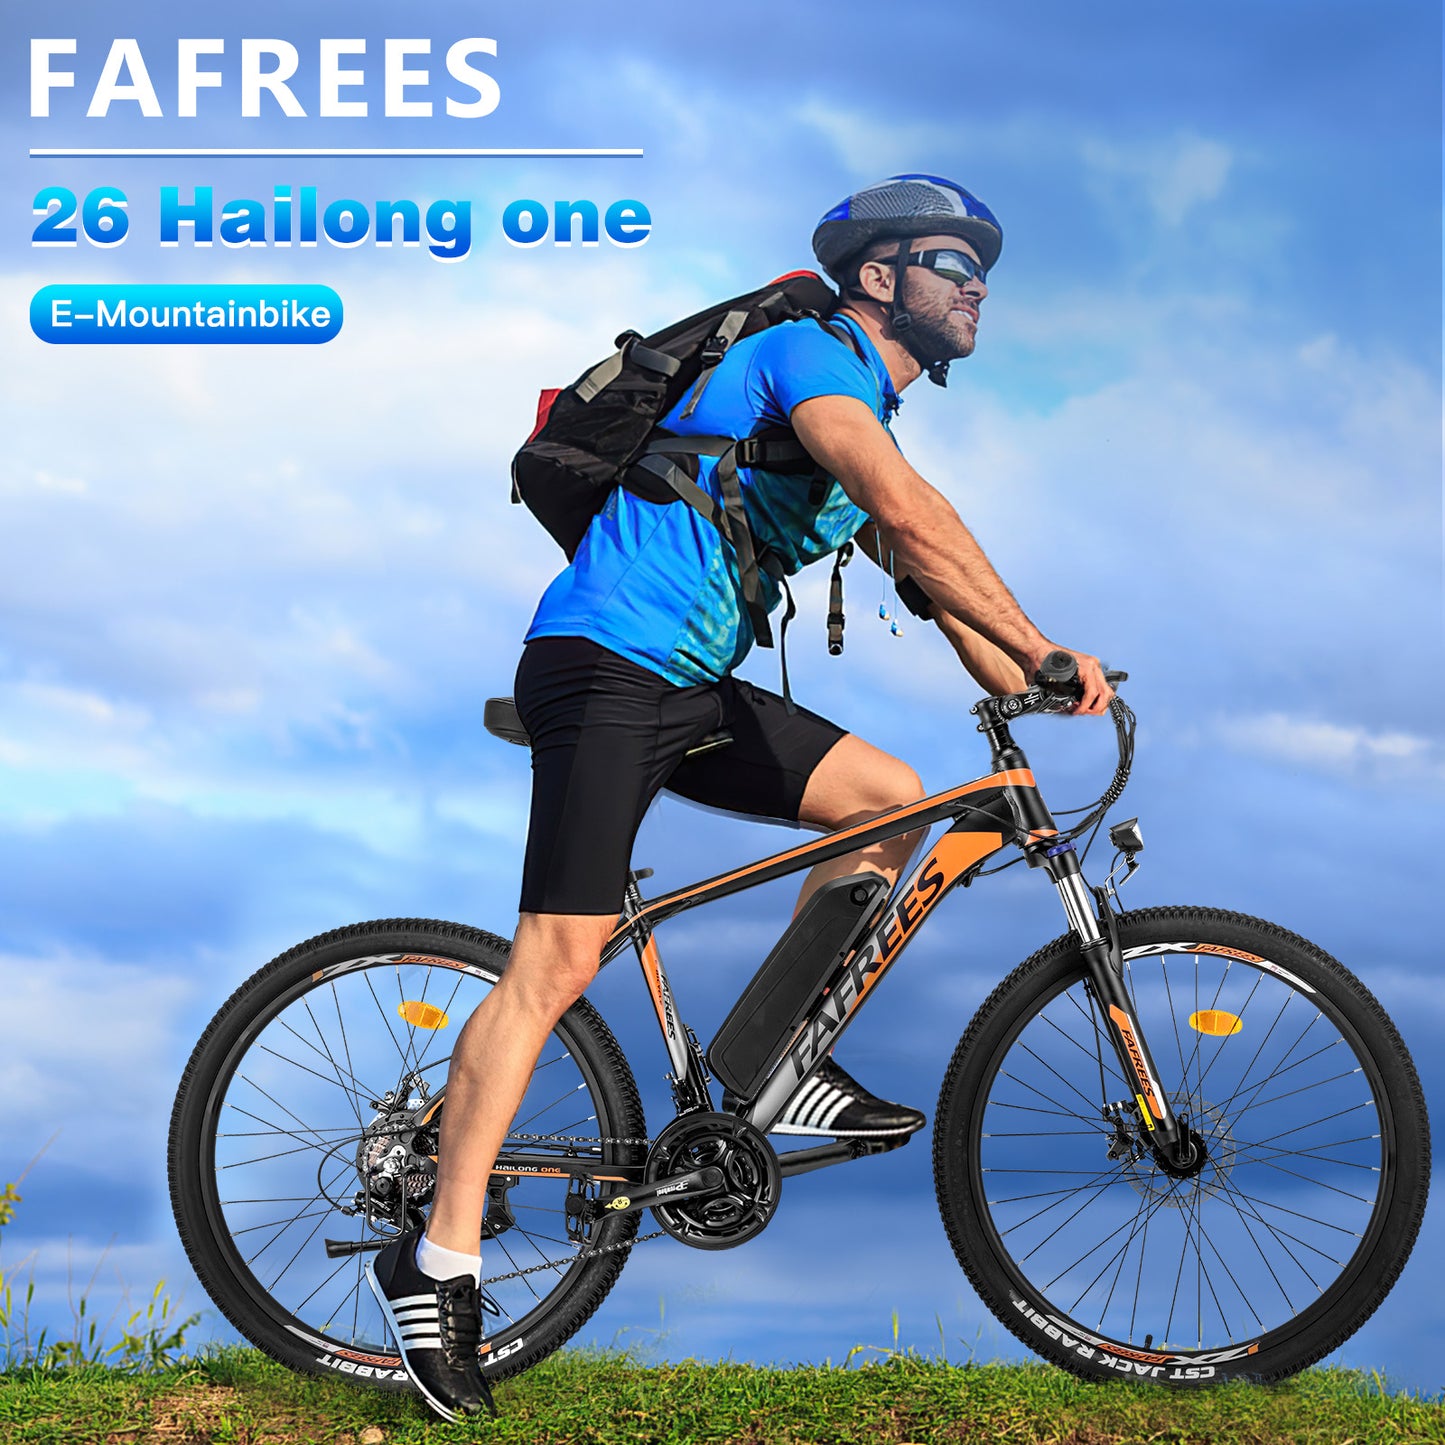 Predobjednávka jedného elektrického bicykla Fafrees 26 Hailong